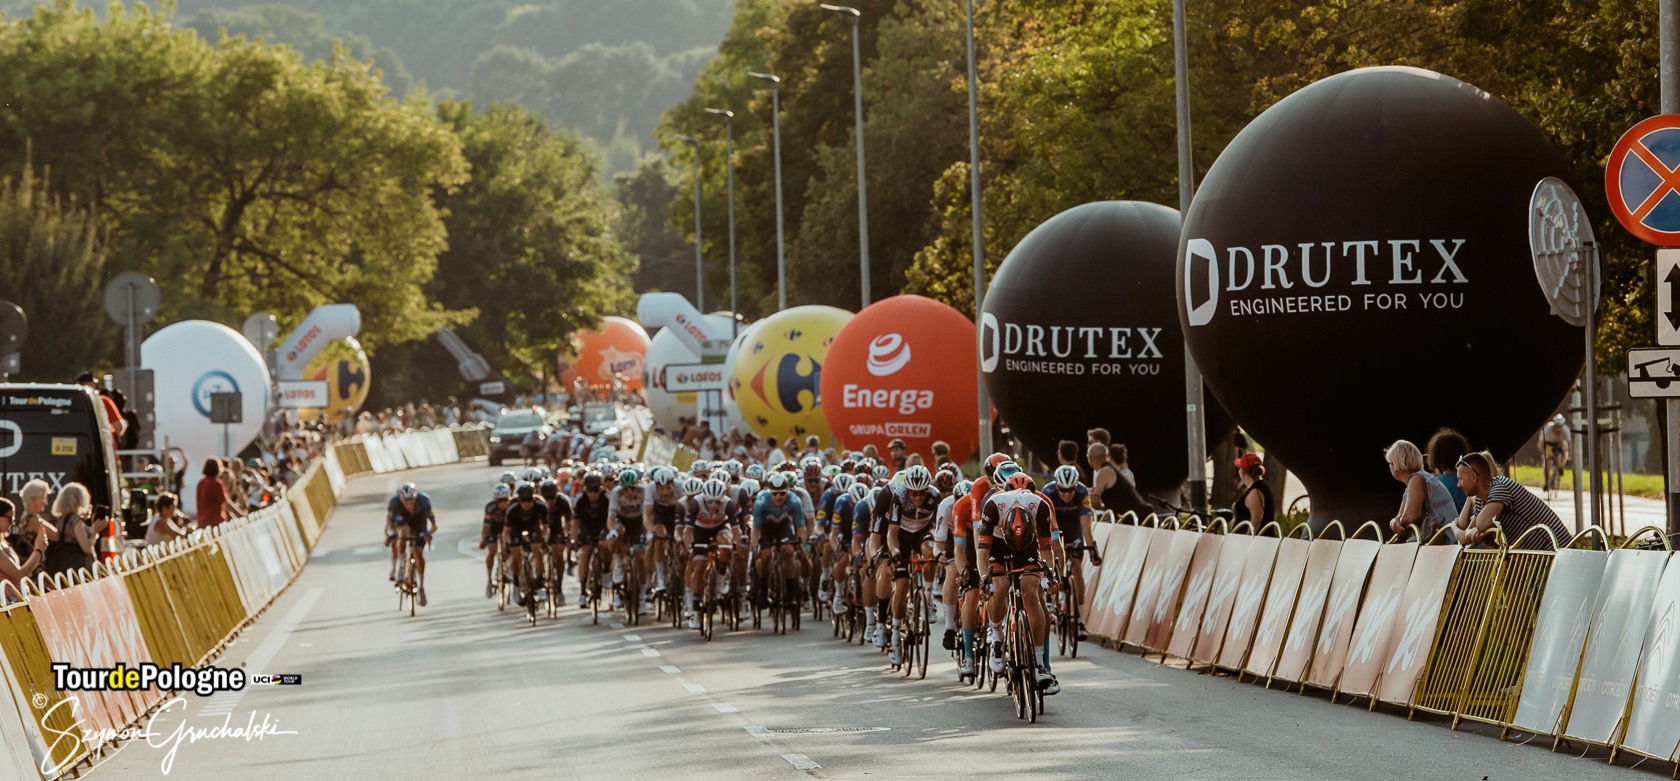 DRUTEX again the Official Sponsor of  Tour de Pologne